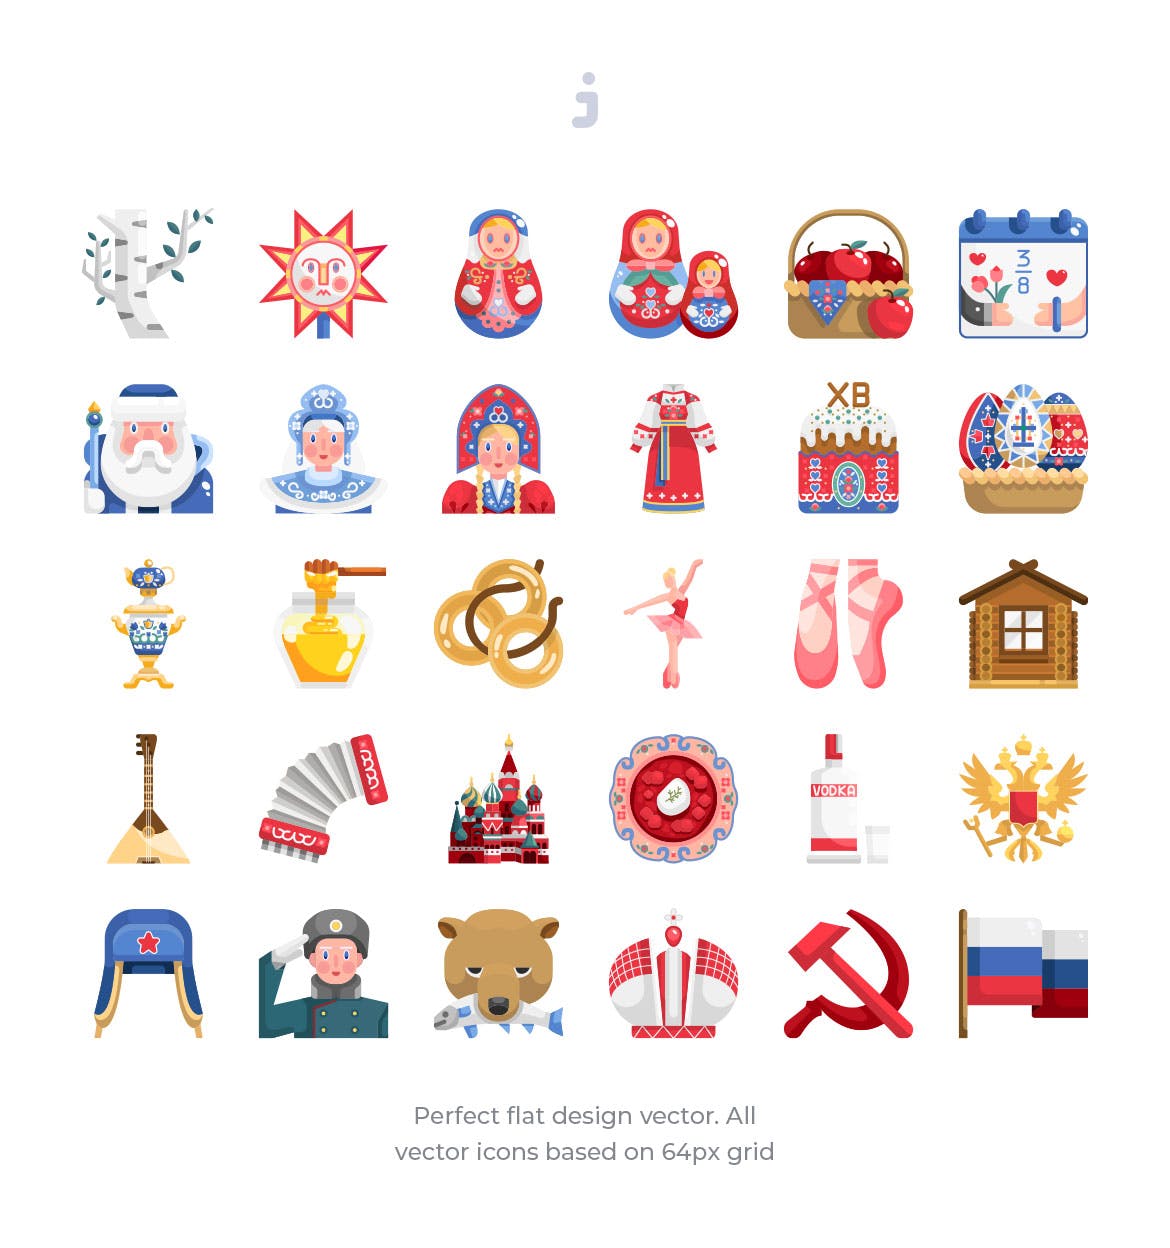 30枚扁平设计风格俄罗斯民族元素矢量素材库精选图标 30 Russia Element Icons – Flat插图(1)